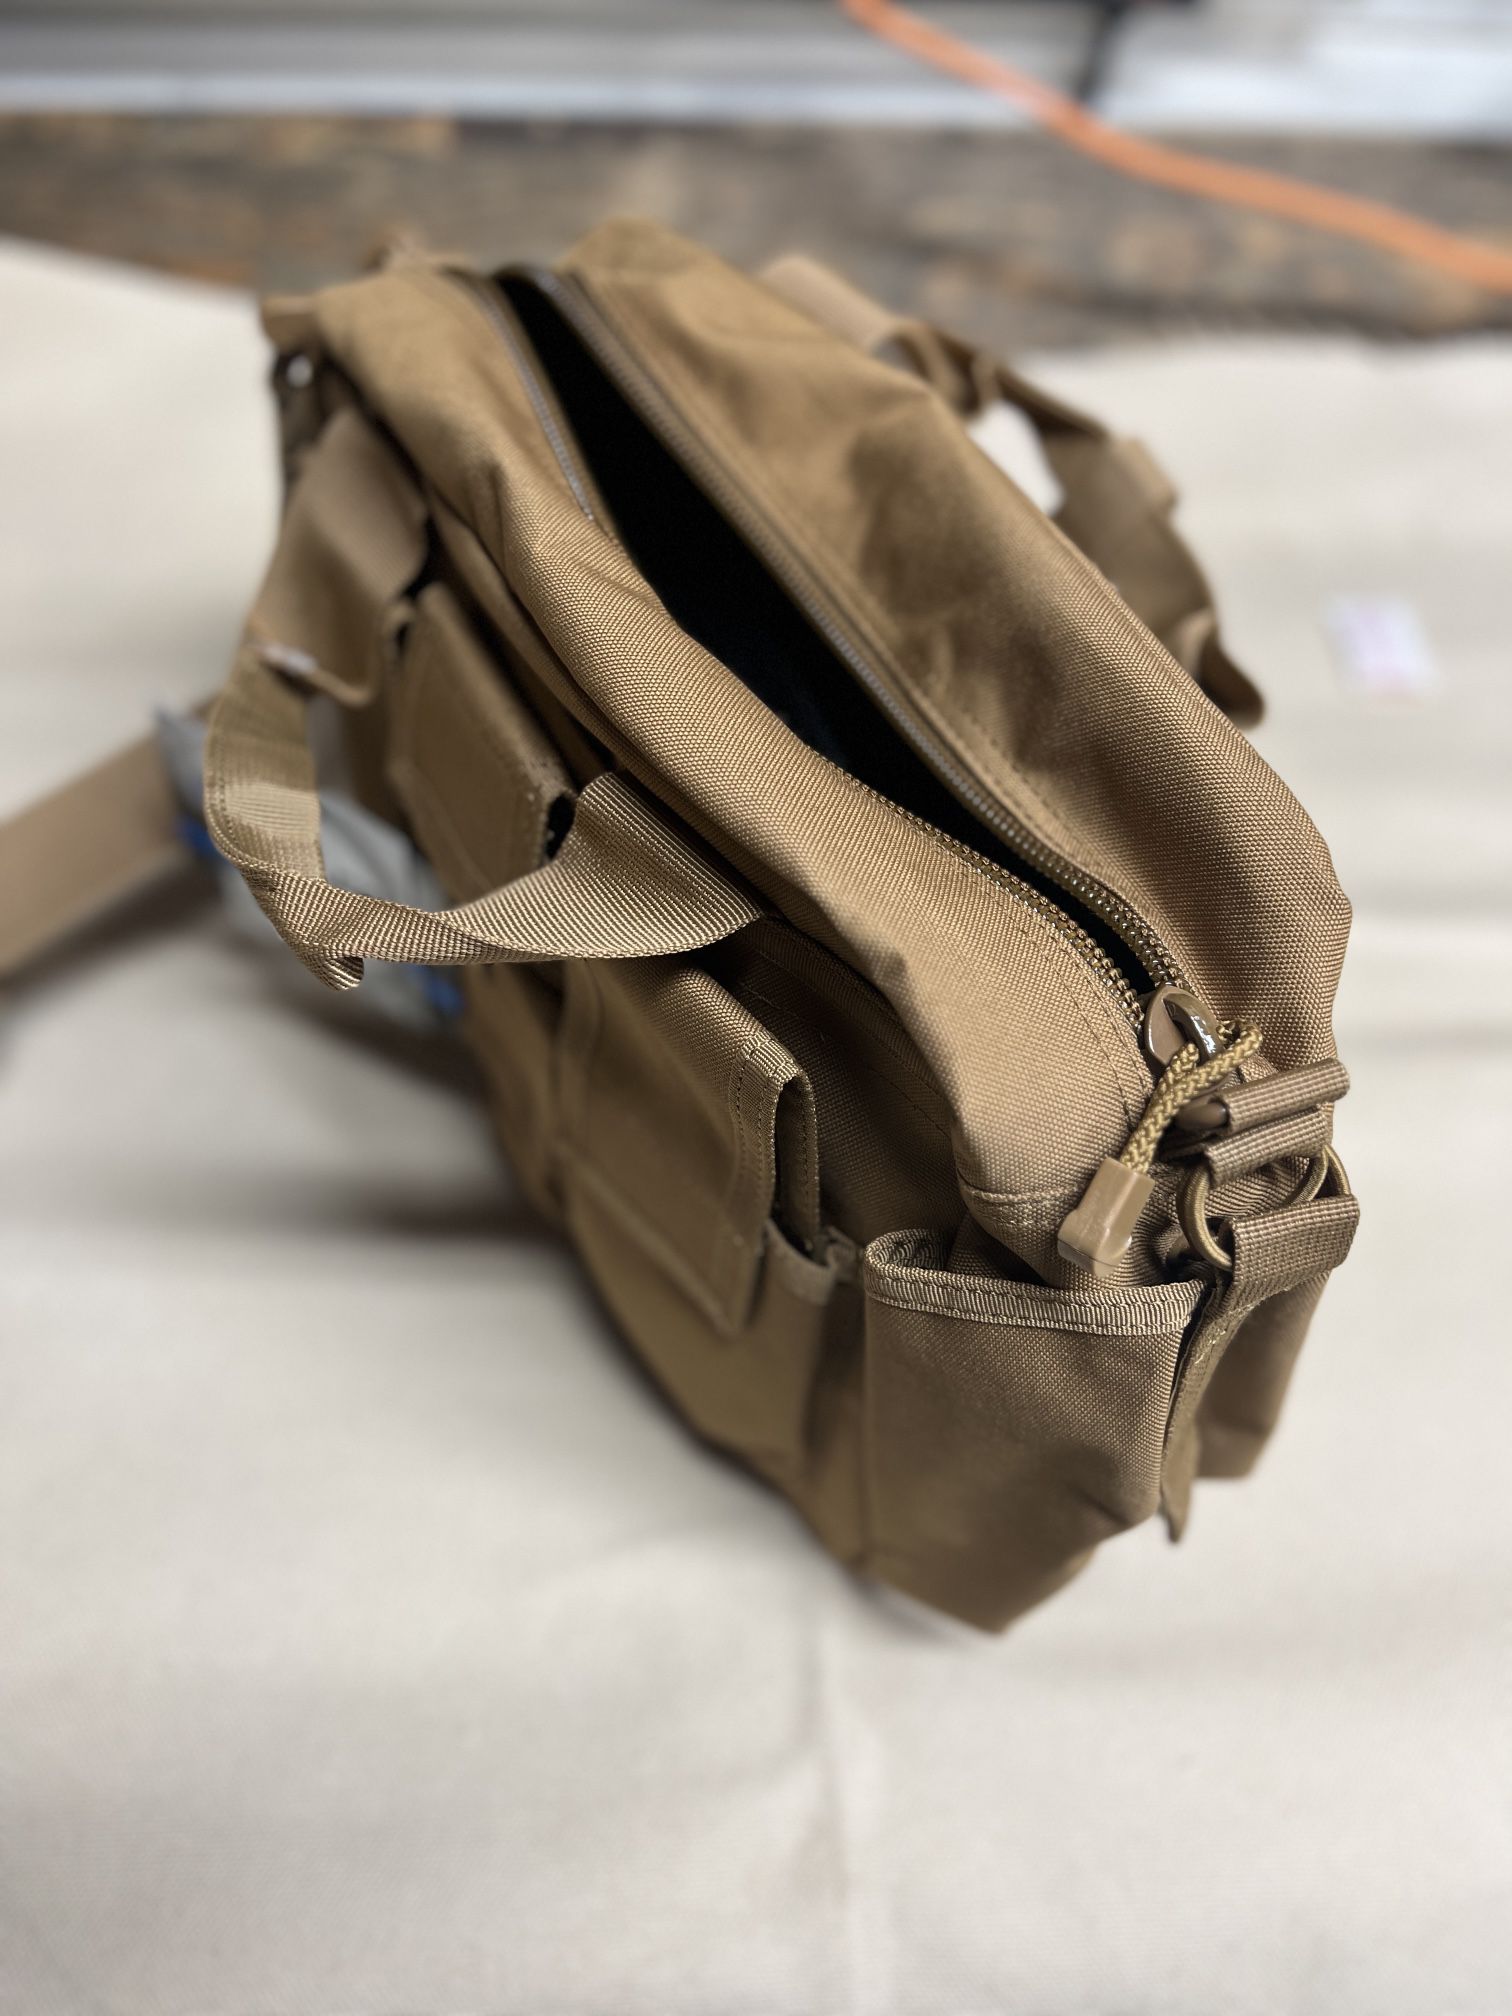 LAPG Range Bag, Laptop Case, Diaper Bag.